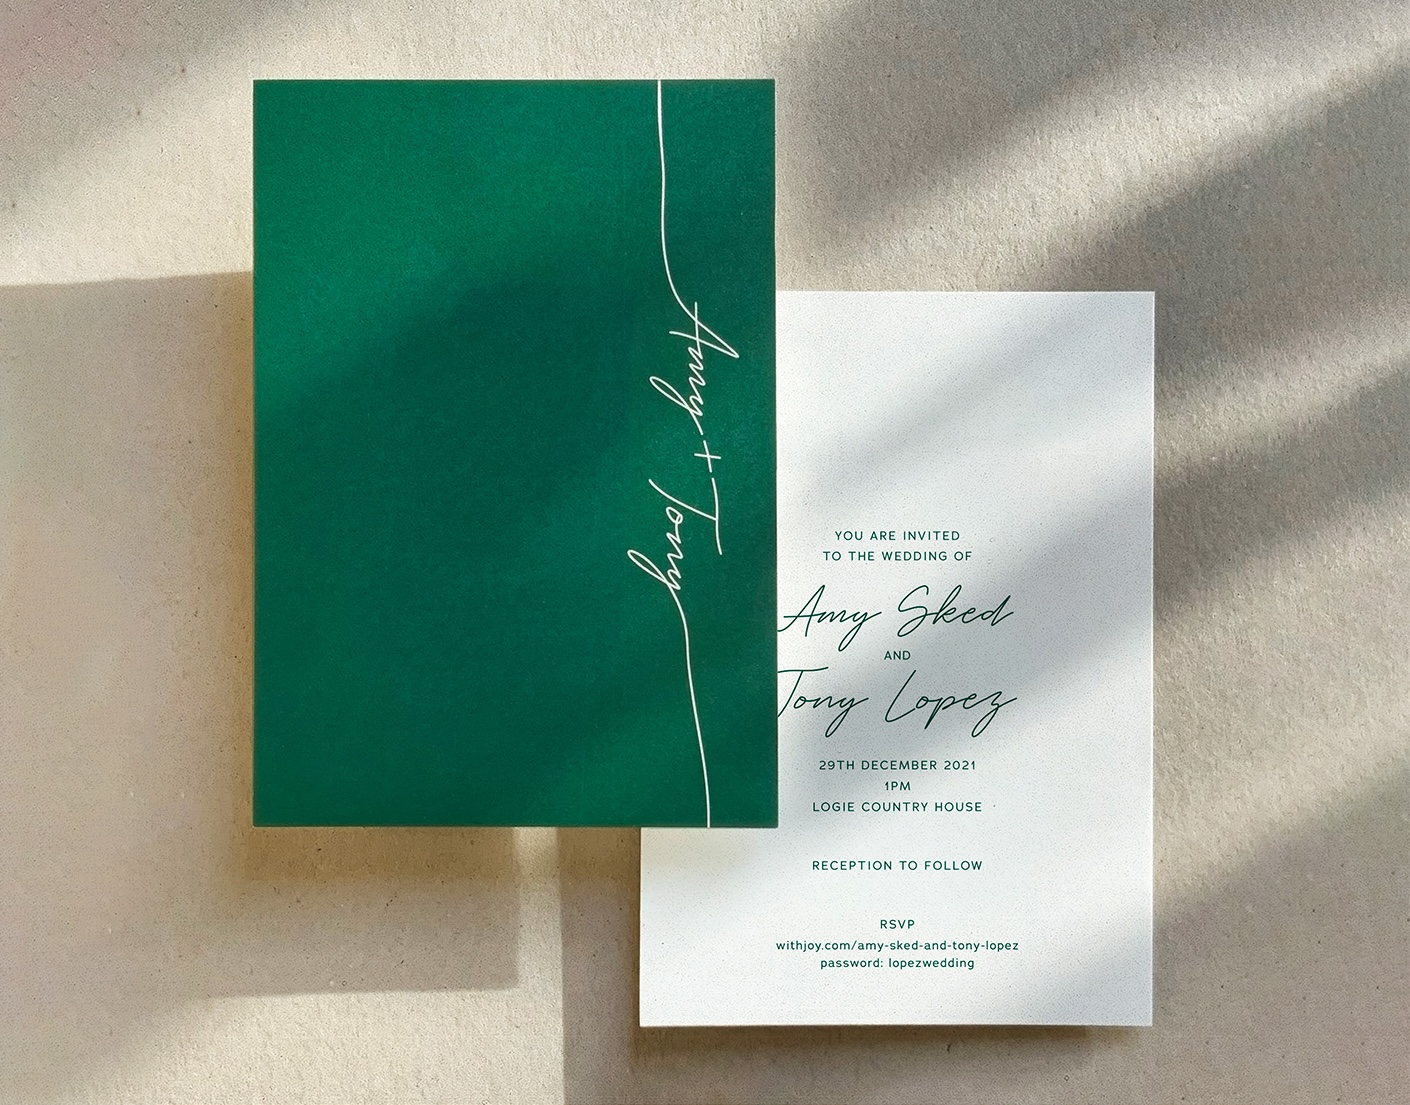 Amy & Tony wedding invitation